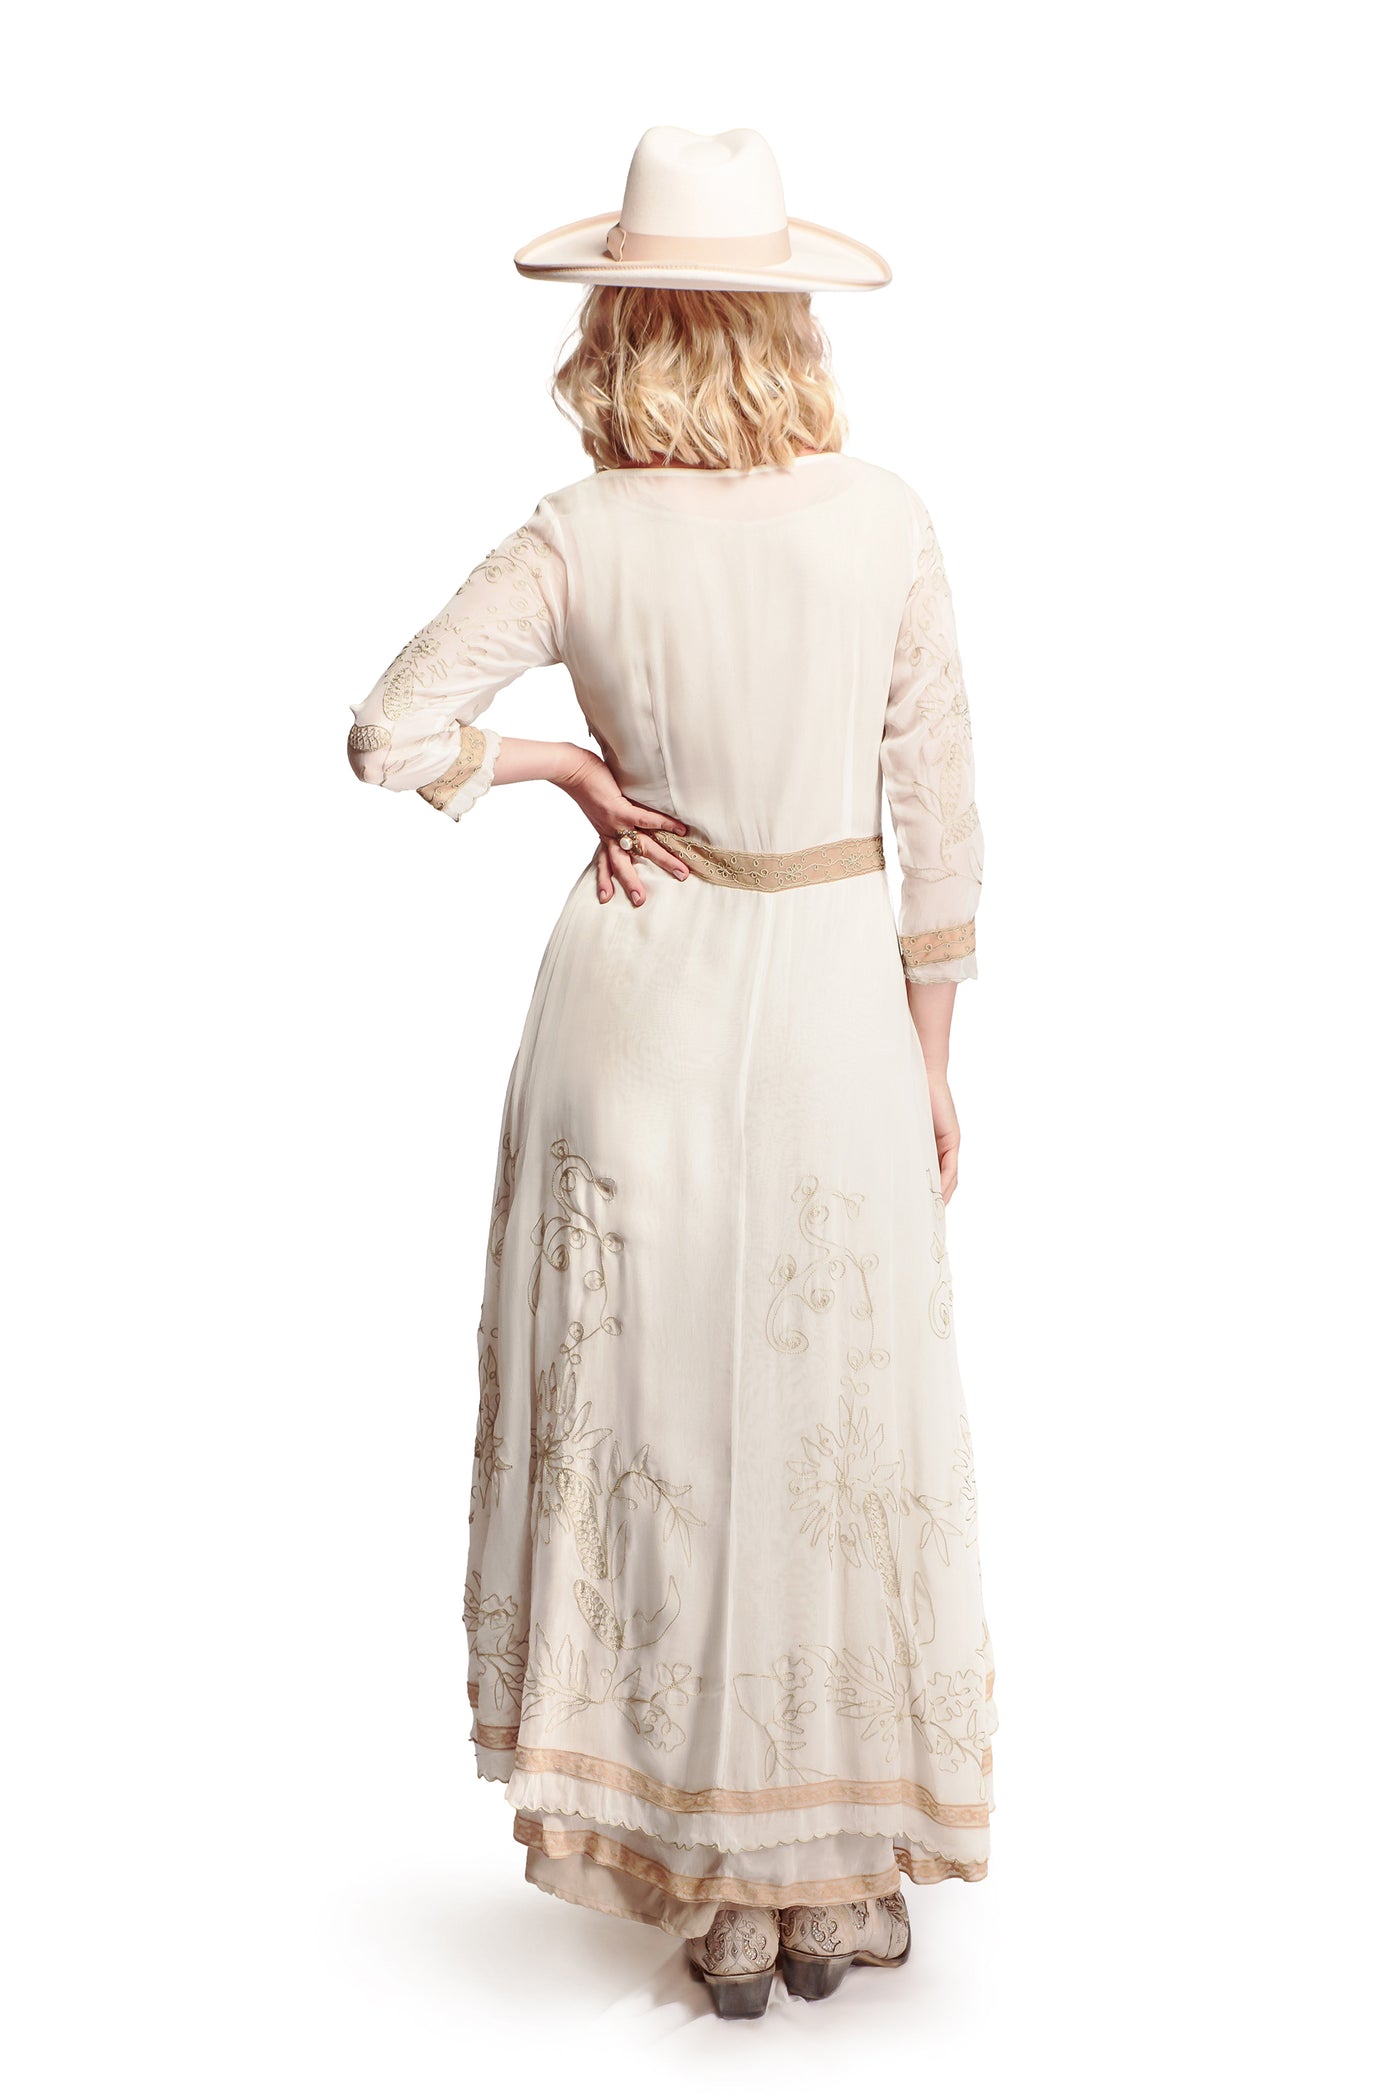 Edith Cowgirl Wedding Dress in Ivory-Beige by Nataya